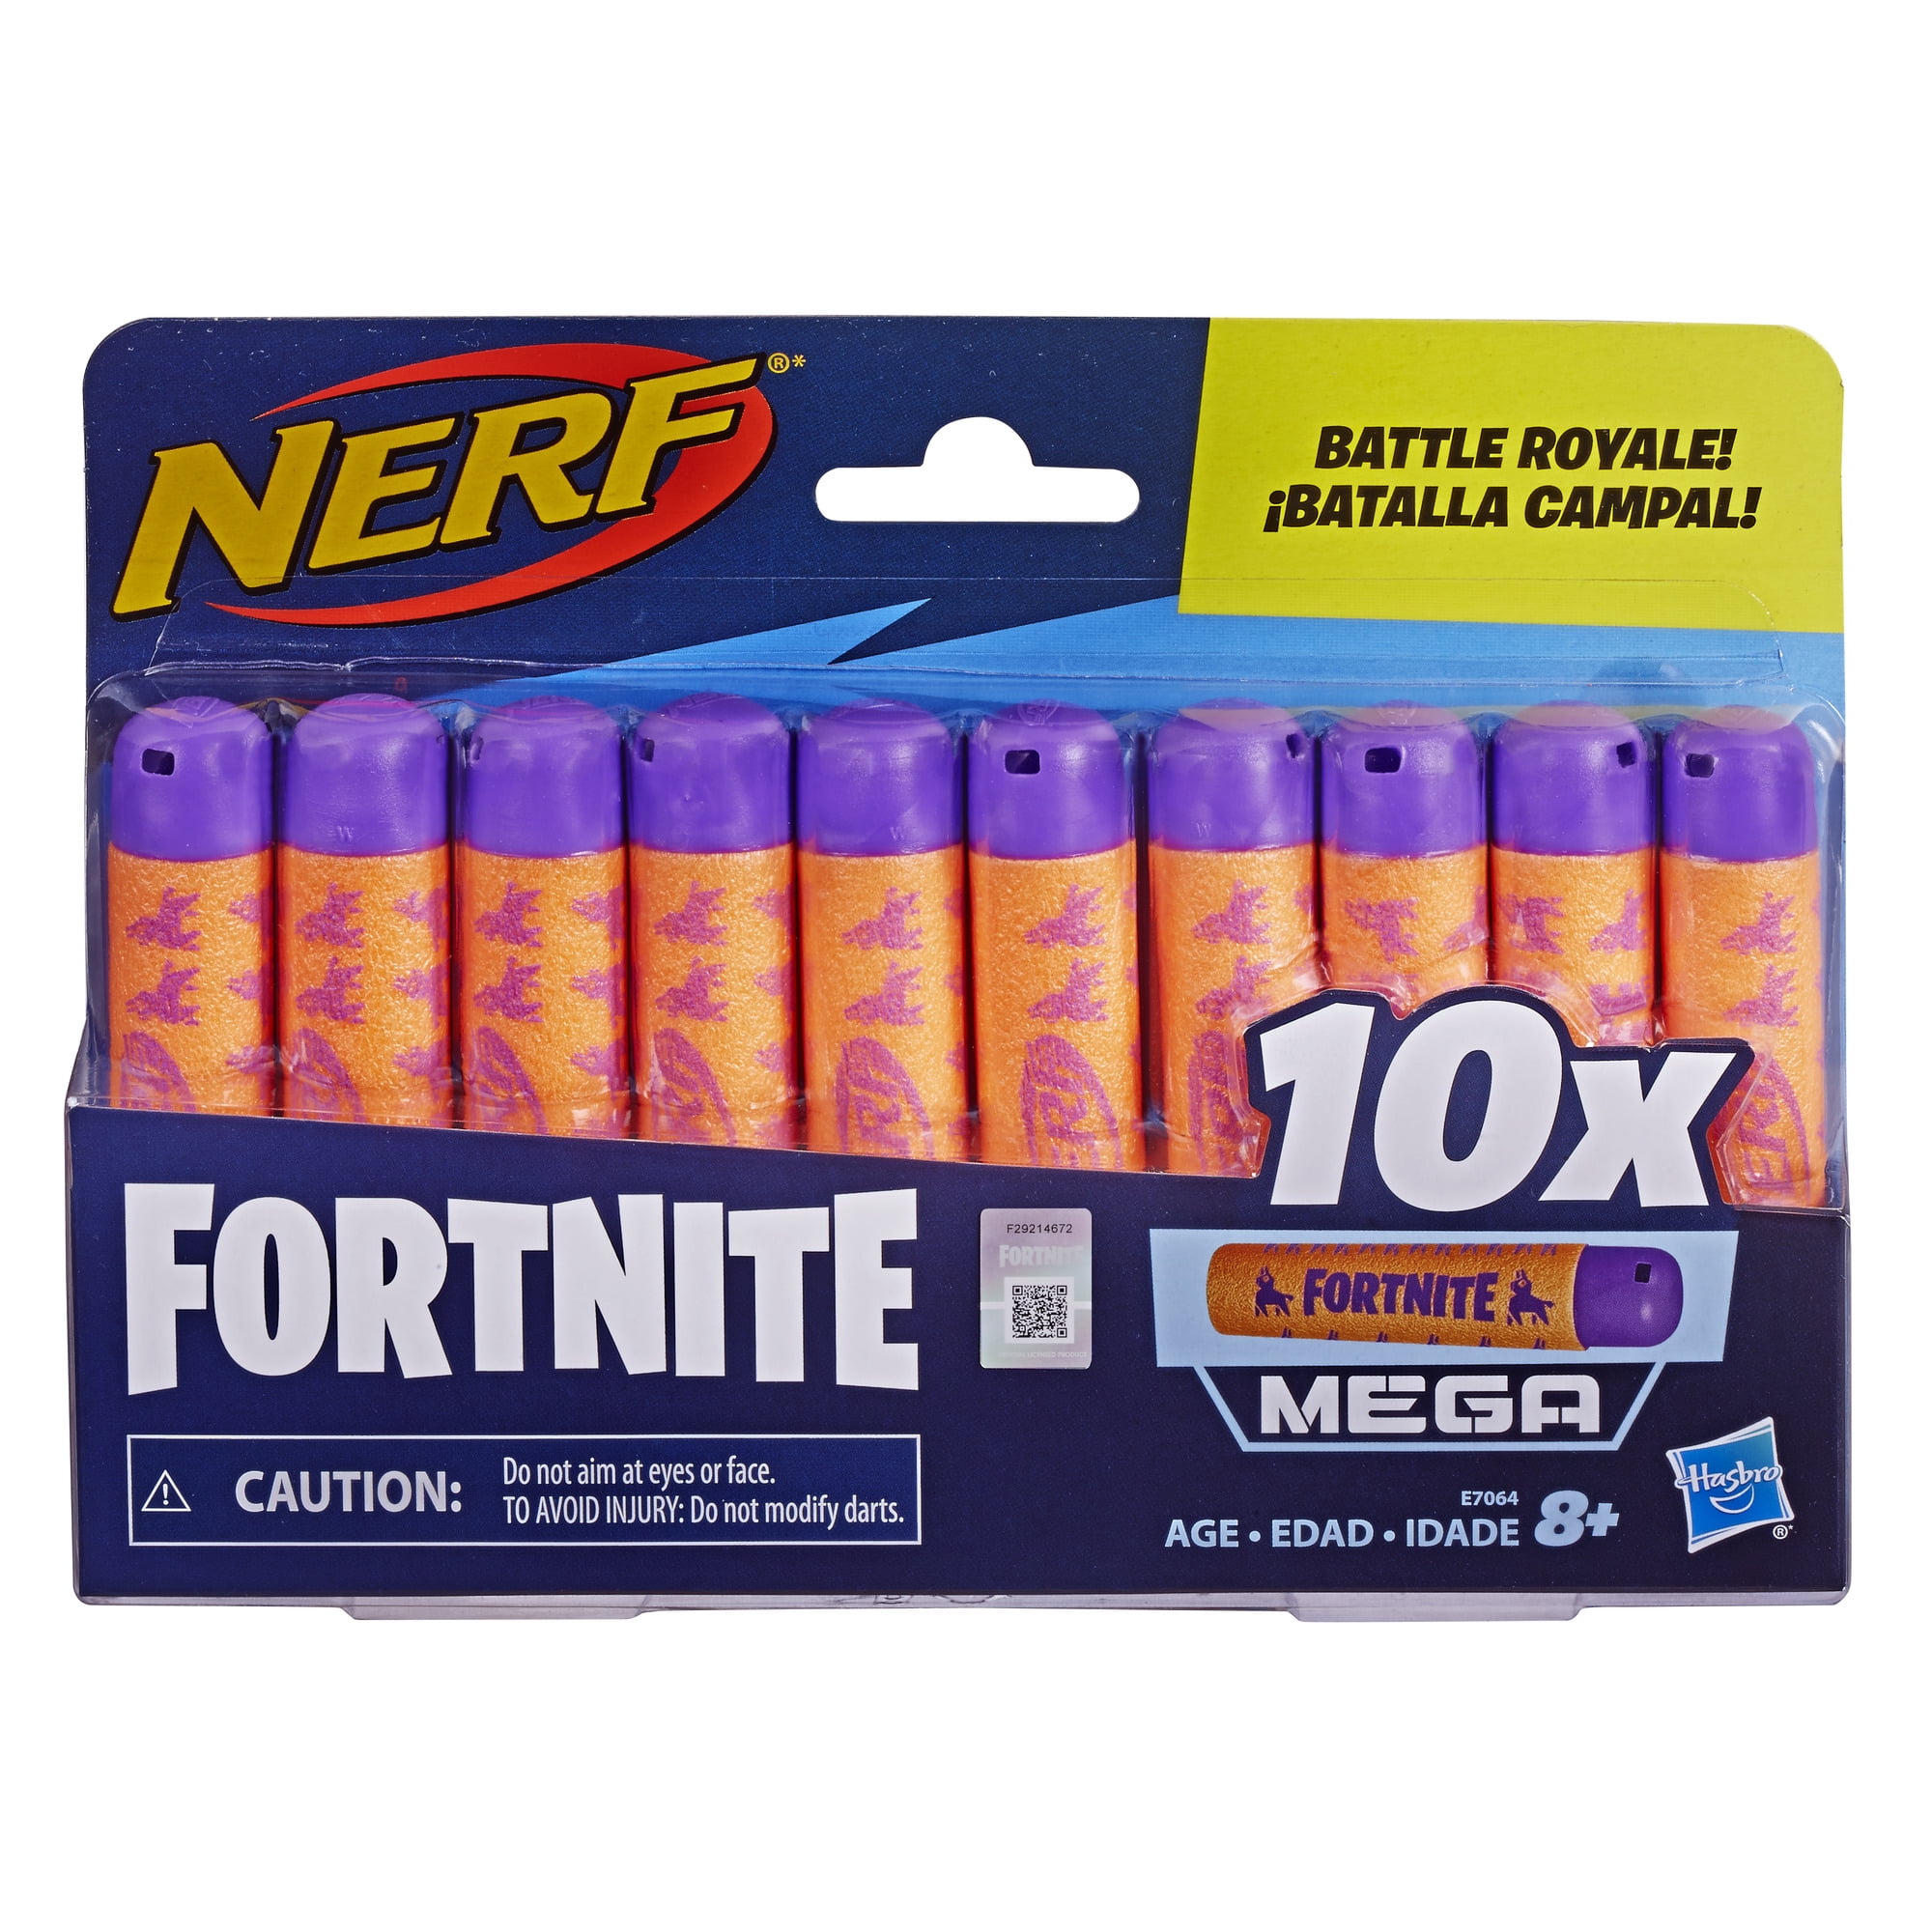 NERF FORTNITE Official 30 Dart Elite Refill Pack Hasbro NERF Battle Royale! 